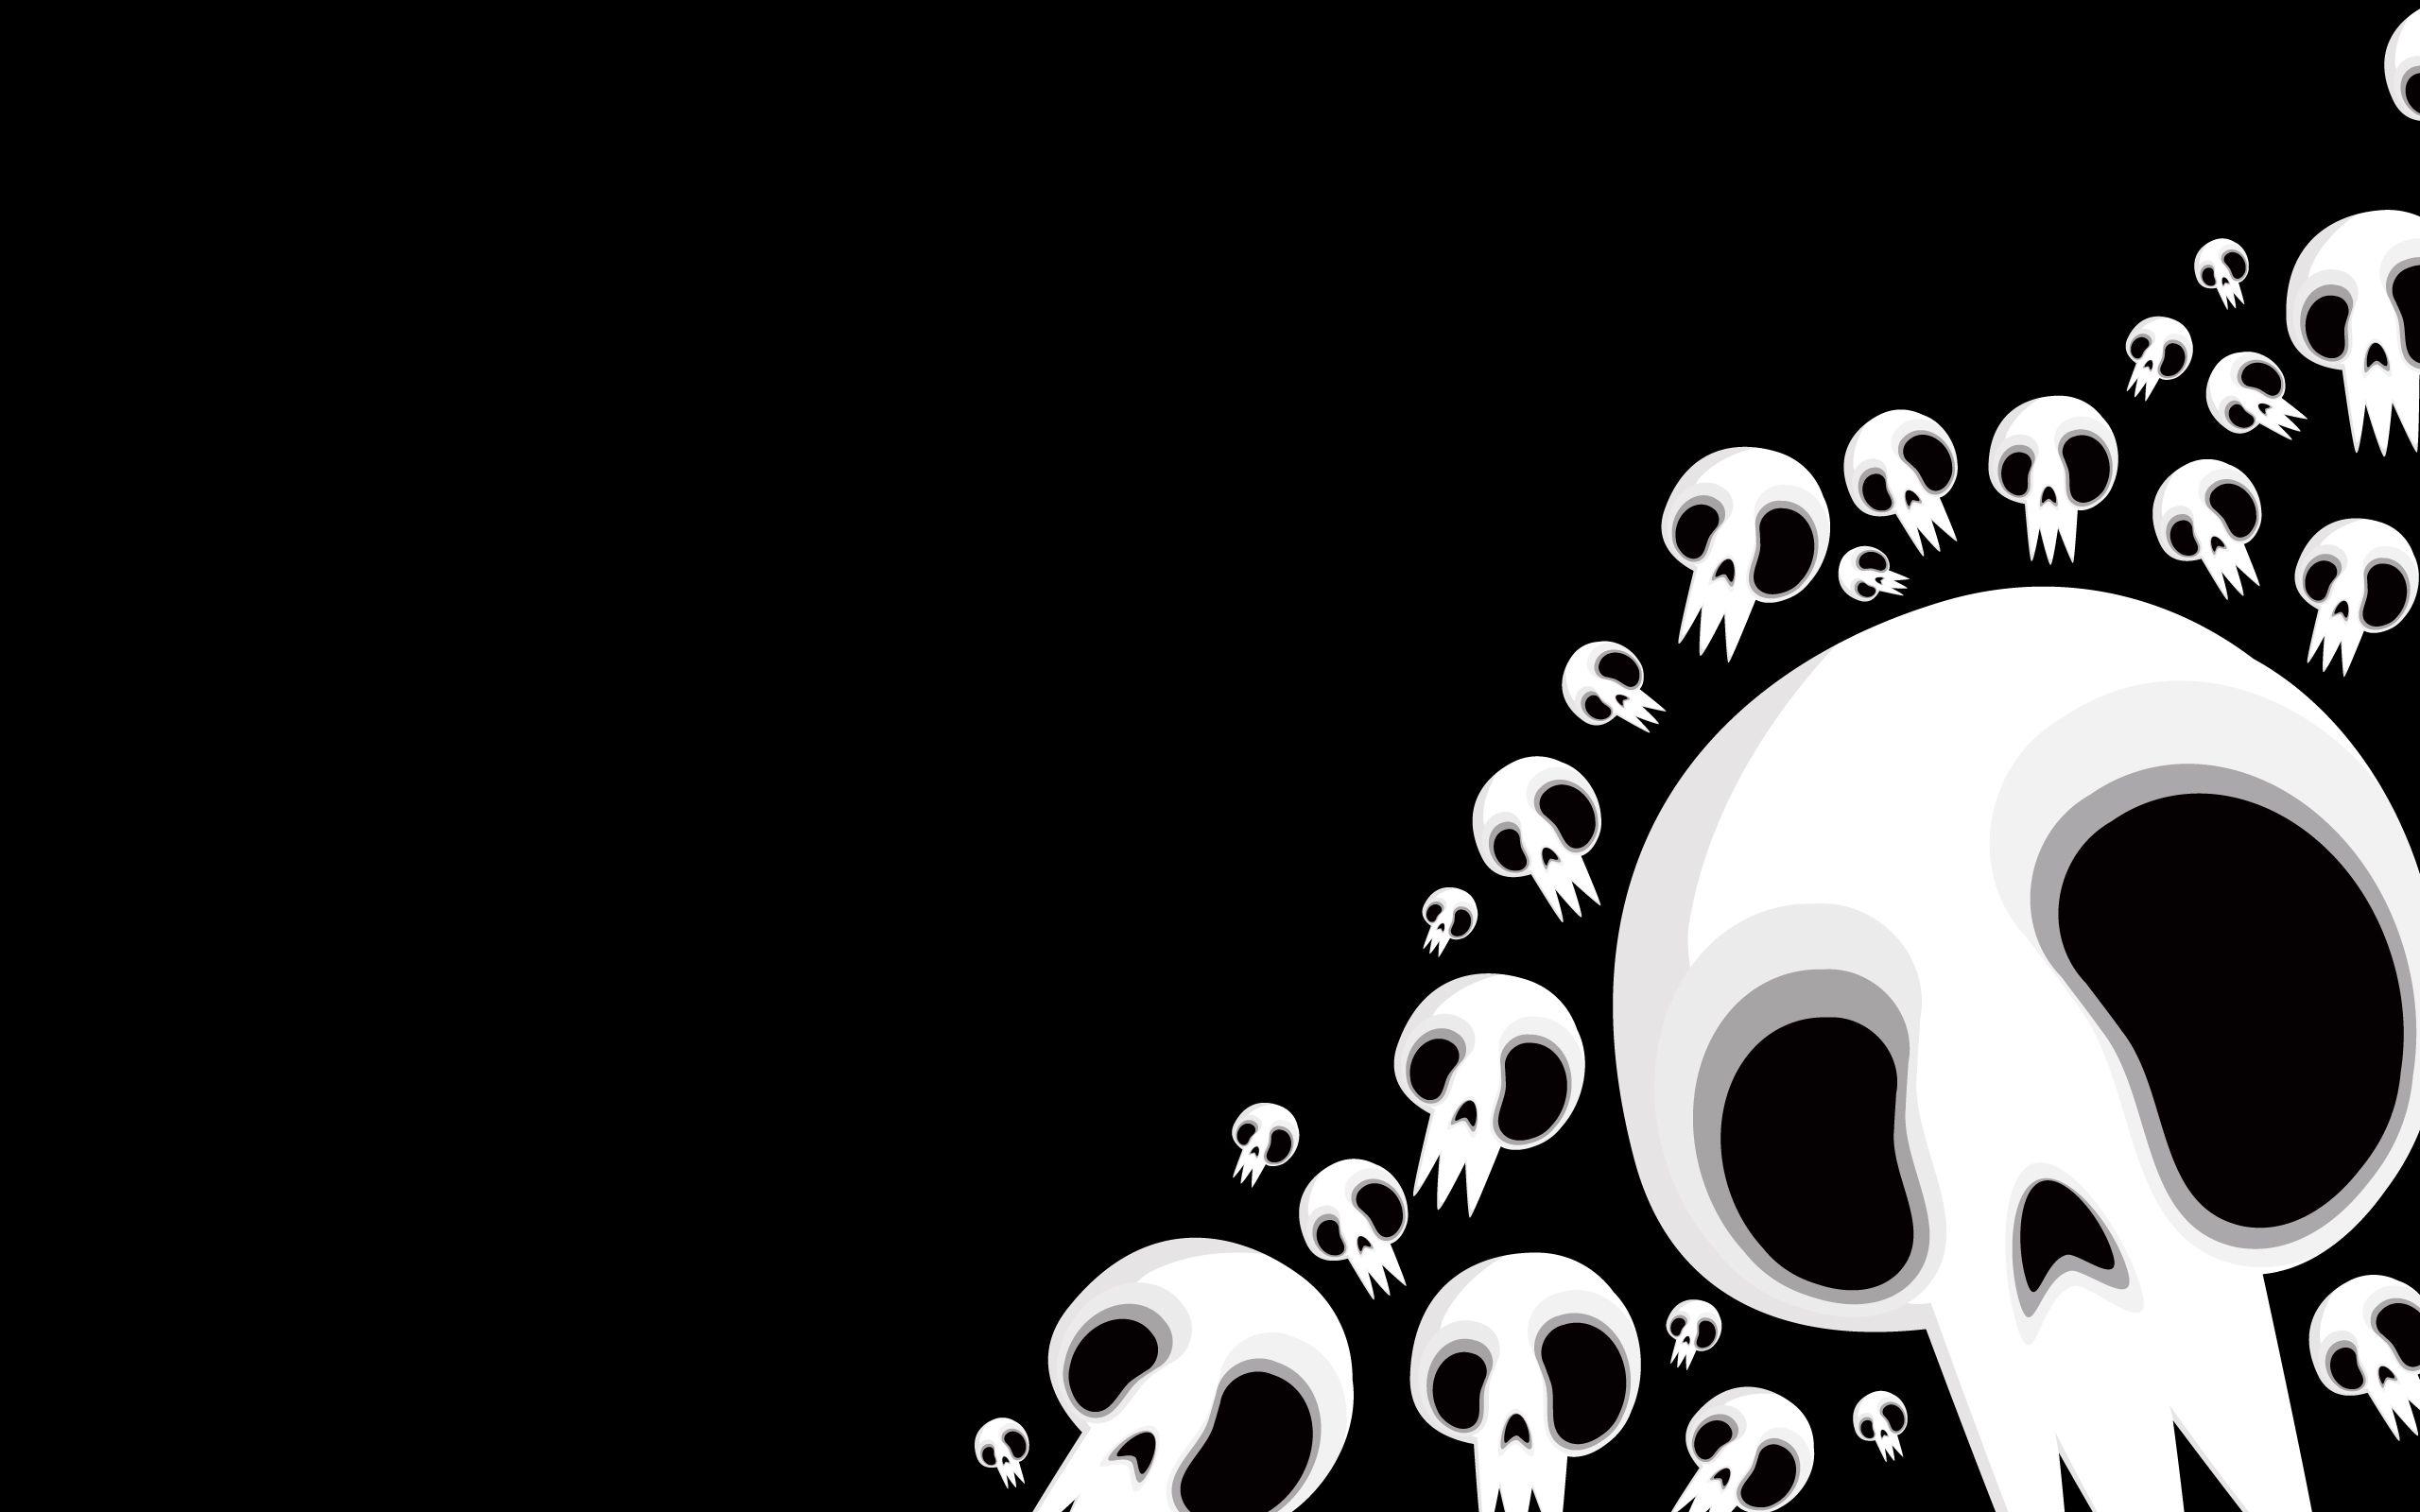 Download the Crazy Skulls Wallpaper, Crazy Skulls iPhone Wallpaper